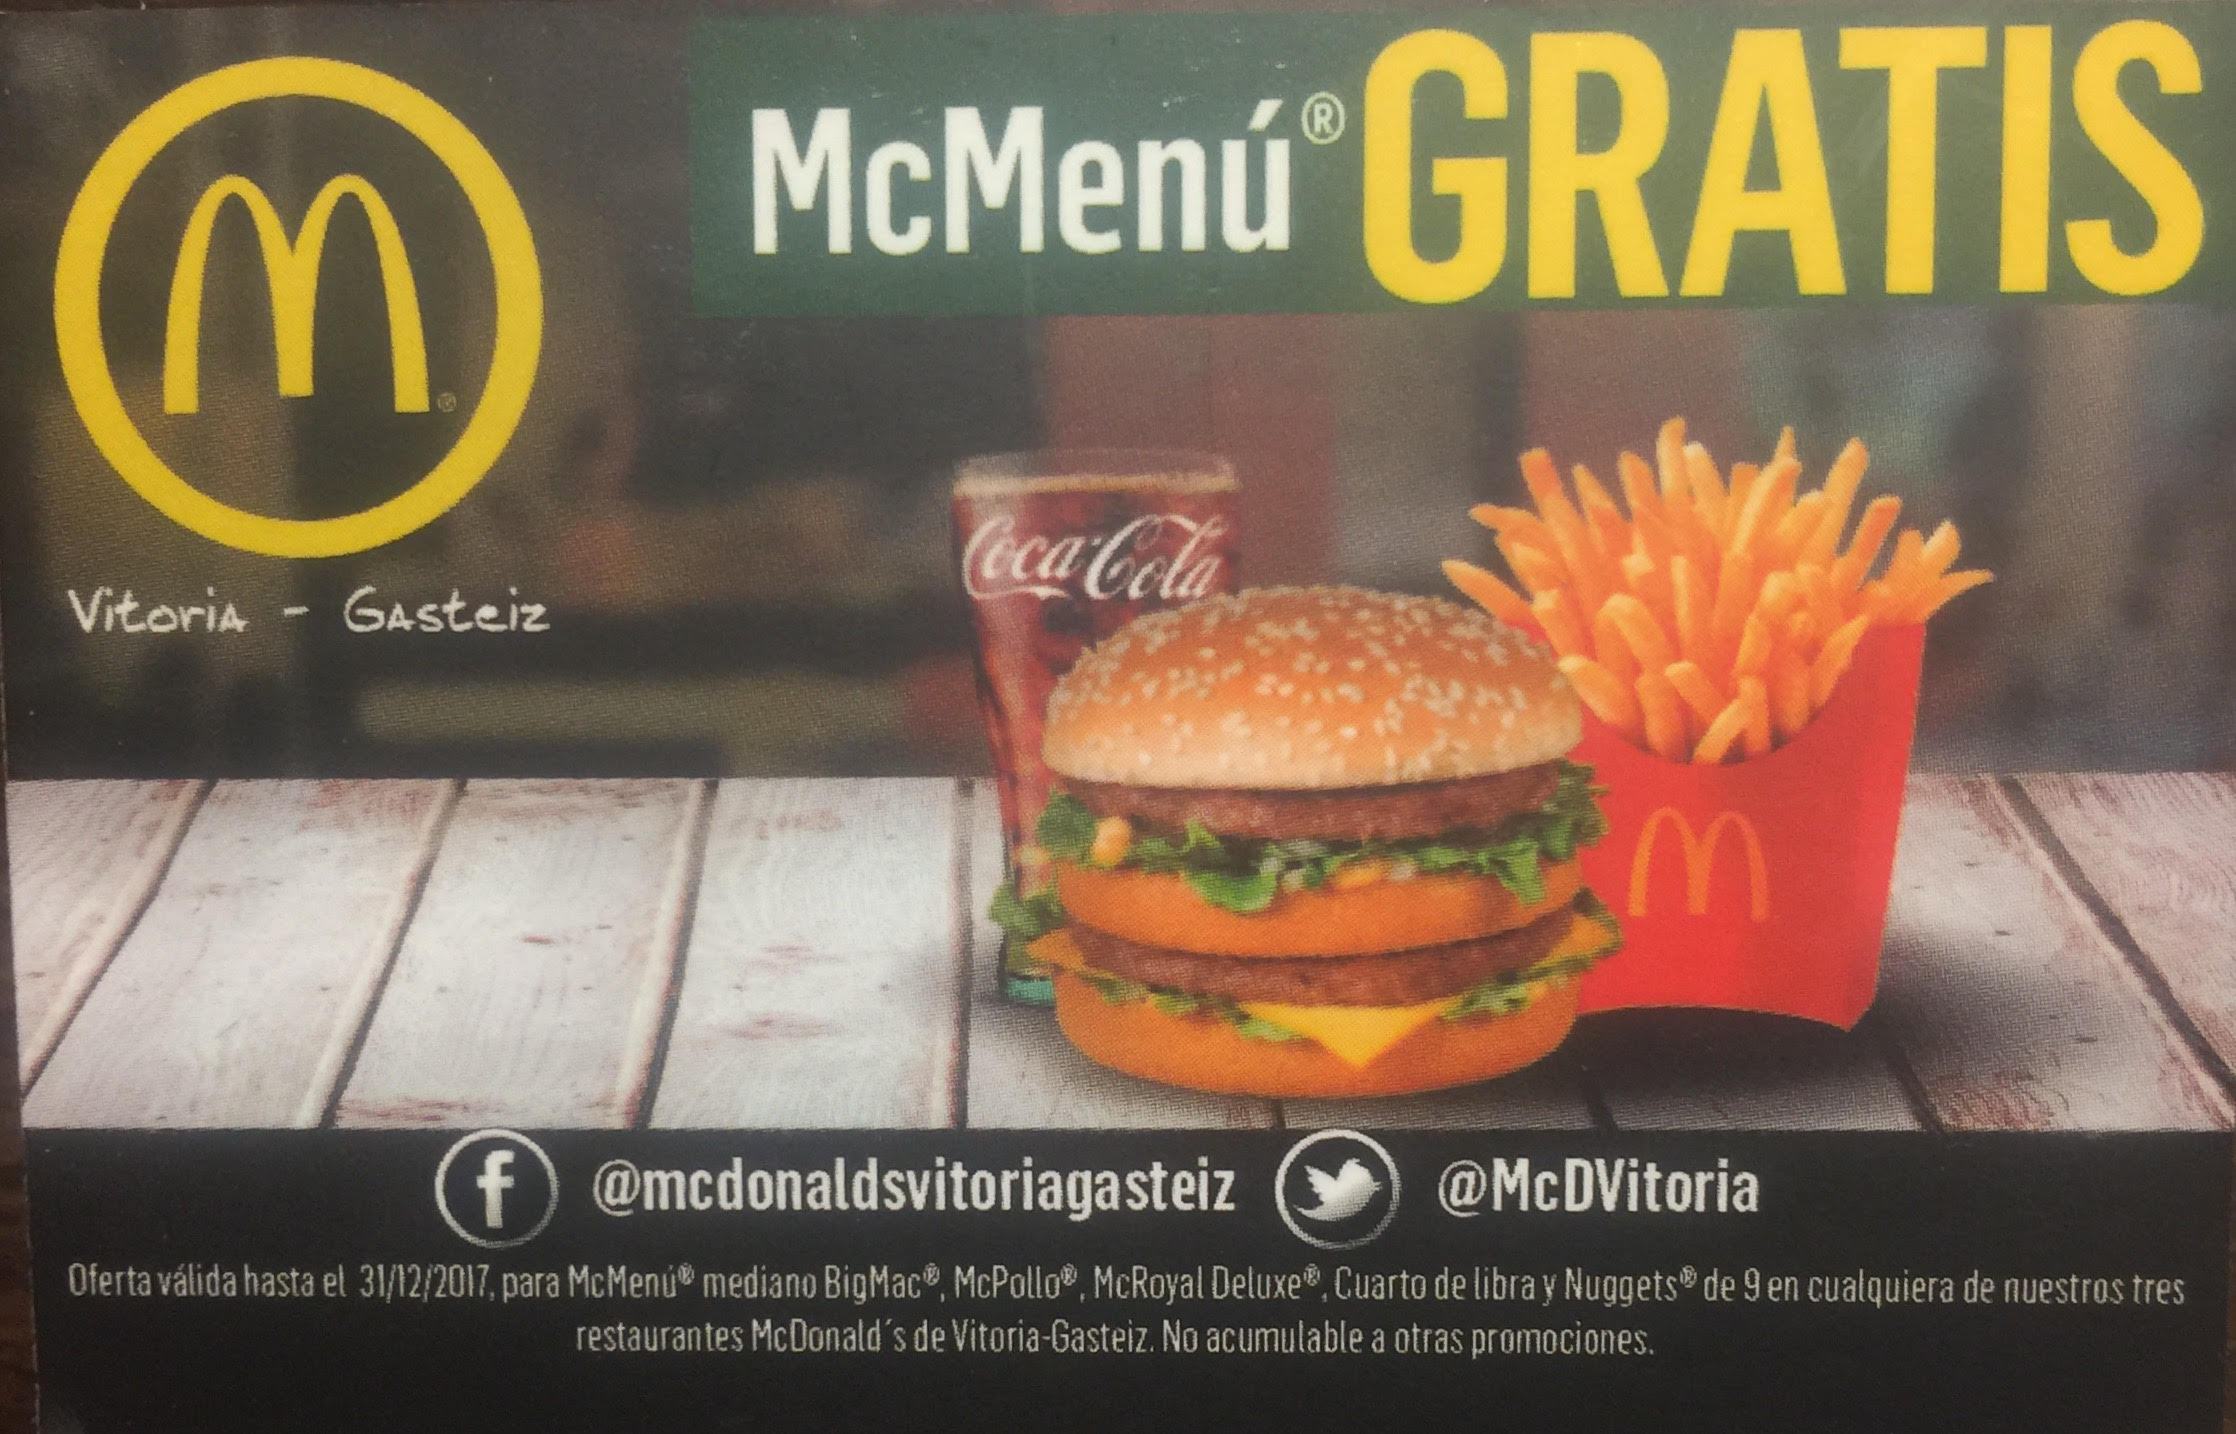 Menús McDonald's gratis para los 30 primeros equipos que tramiten sus licencias para la proxima temporada 2017/2018.